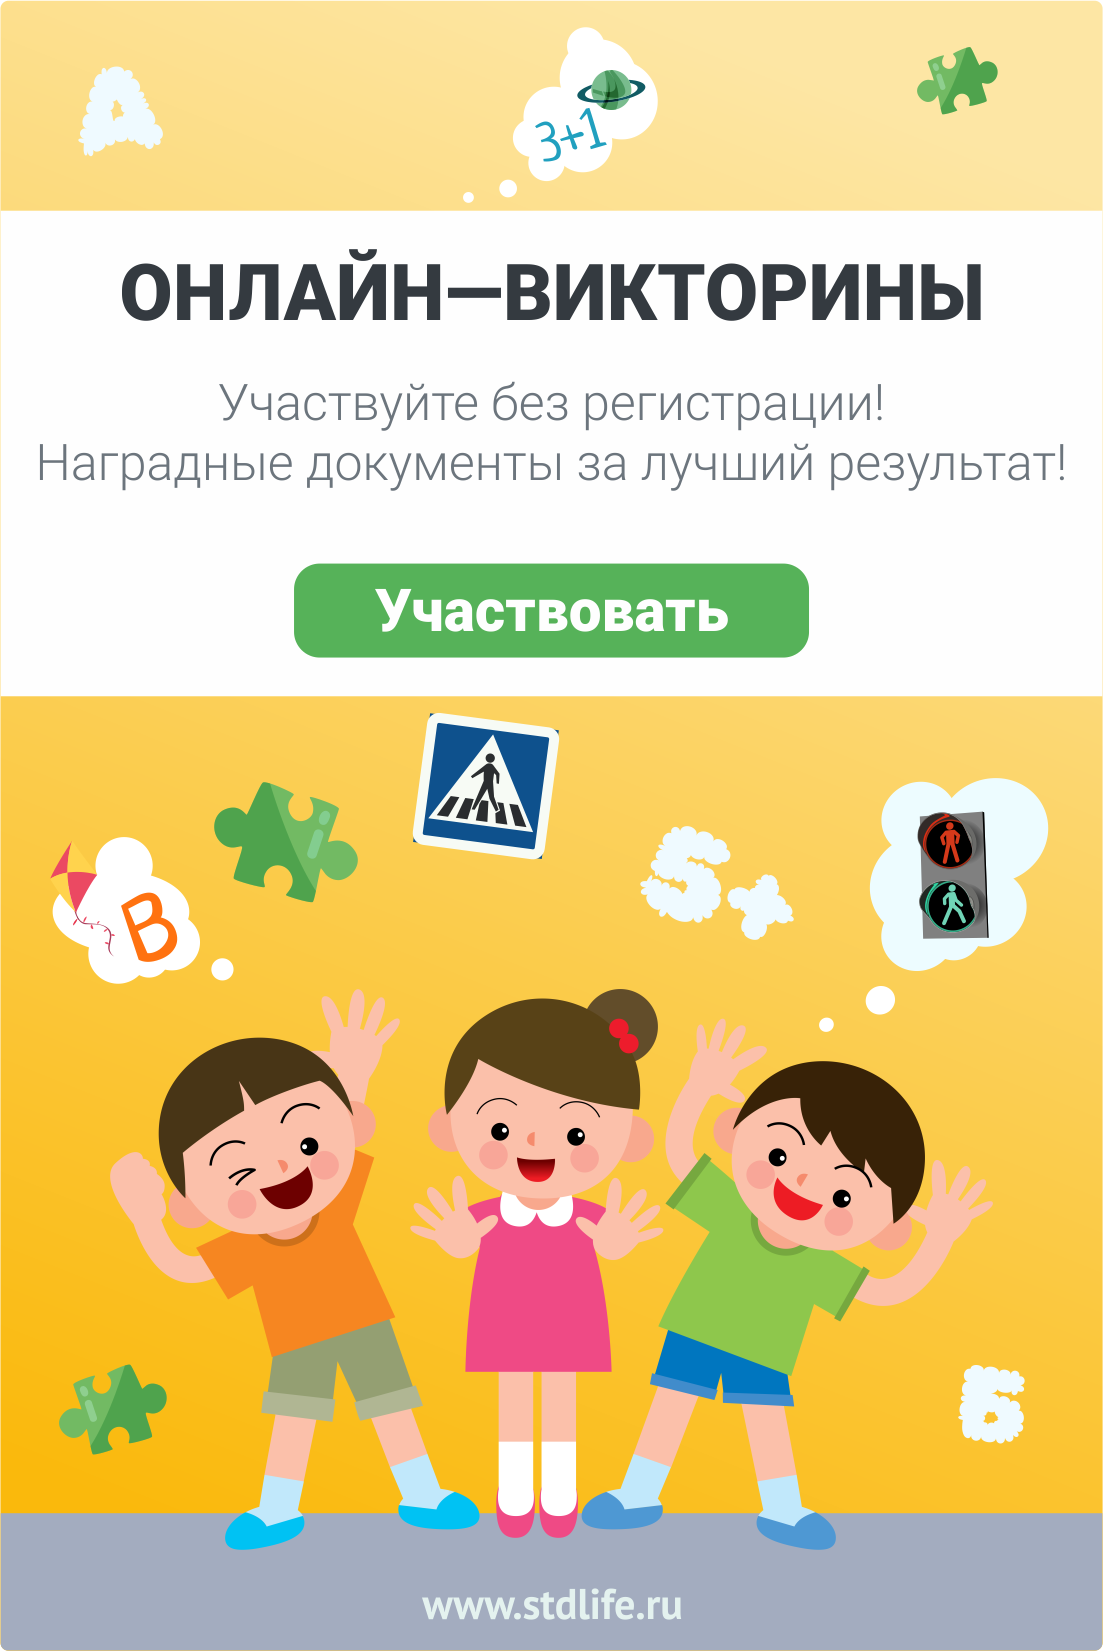 Всероссийские онлайн-викторины. Мероприятия для дошкольников и школьников от Study Life.